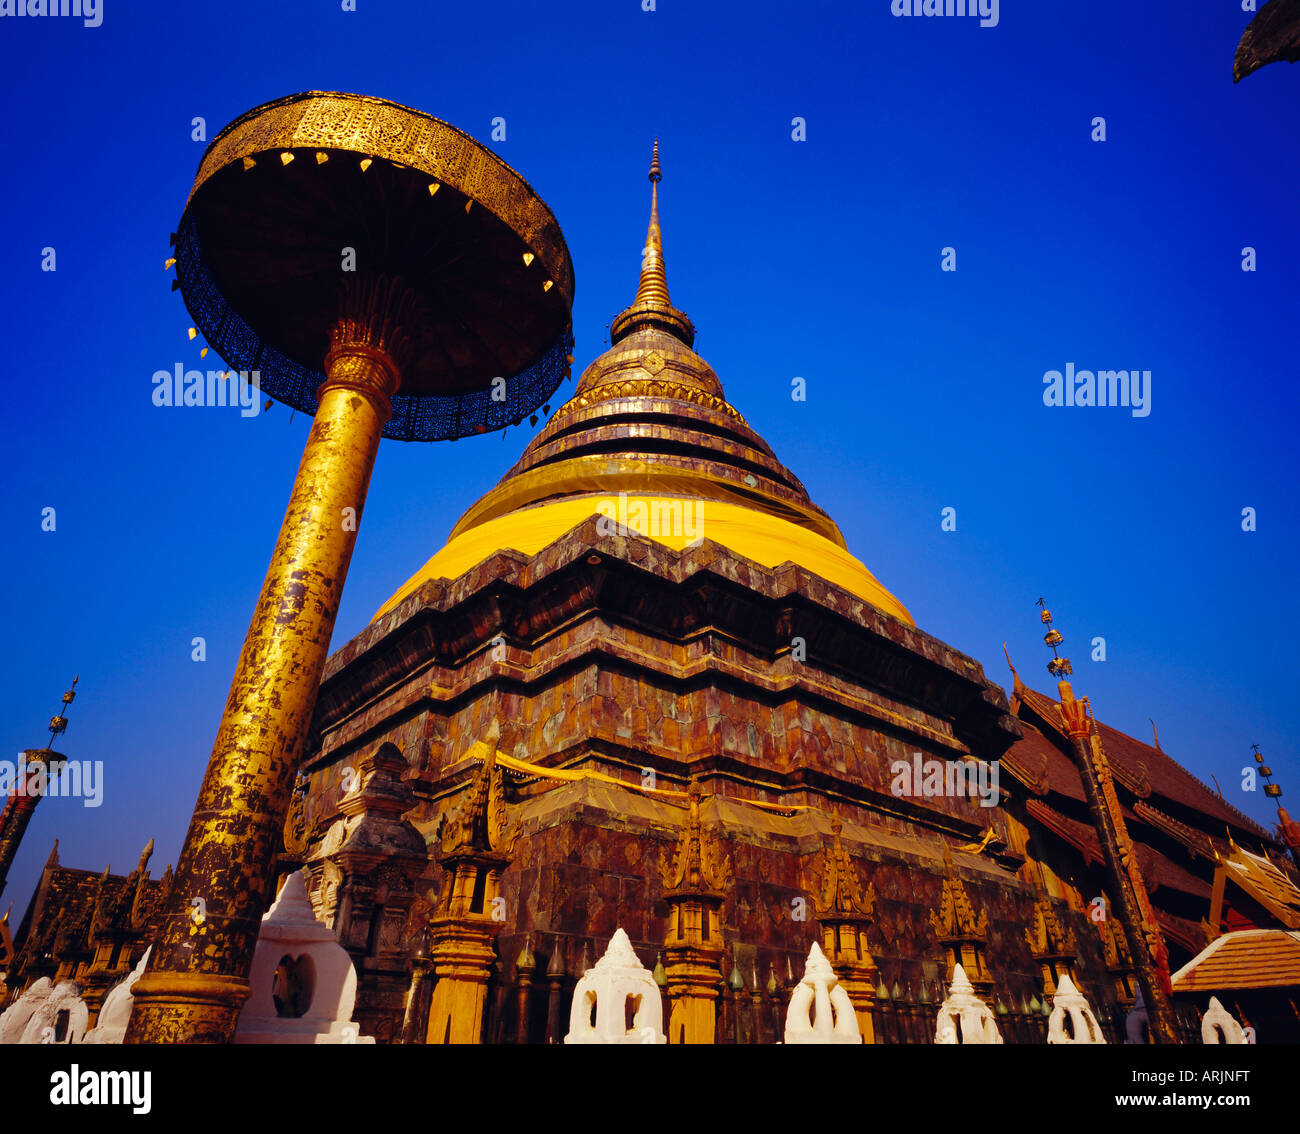 Main chedi and umbrella in Lanna style, Wat Phra That Lampang Luang, Lampang Province, Thailand Stock Photo